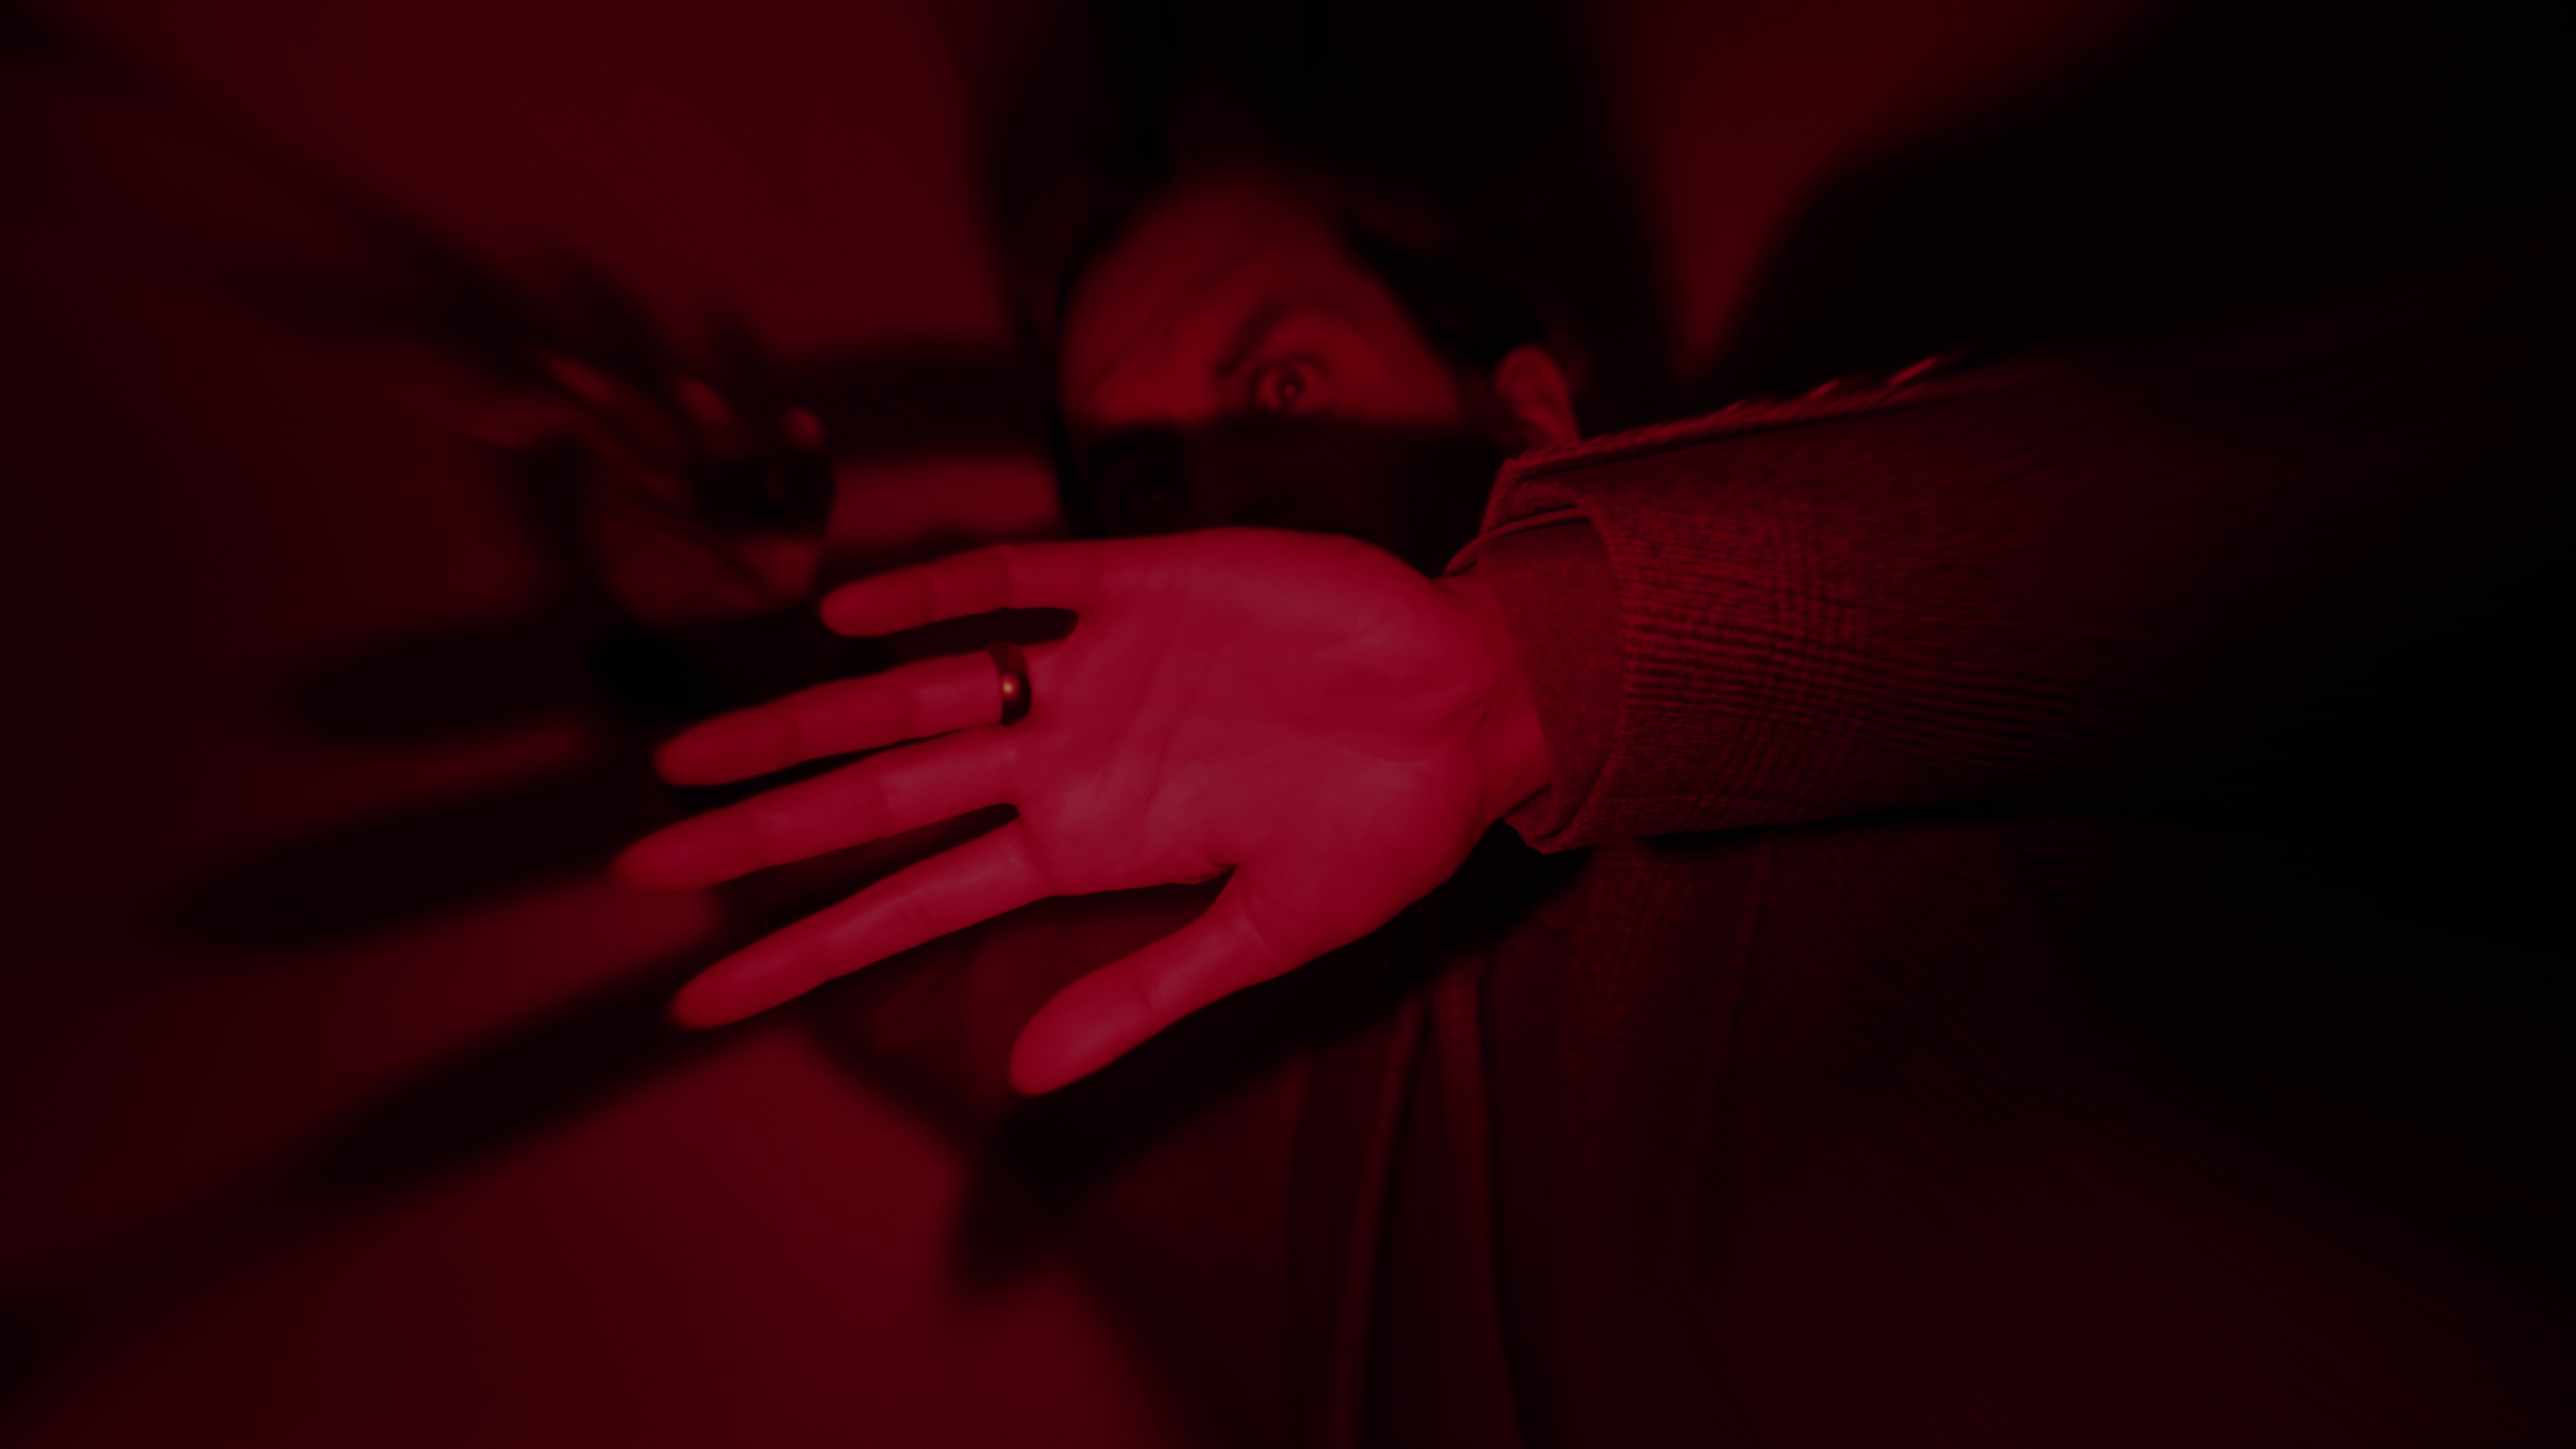 Zrzut ekranu z gry Alan Wake 2 przedstawiający Alana uwięzionego w ciemnym miejscu pod czerwonym światłem